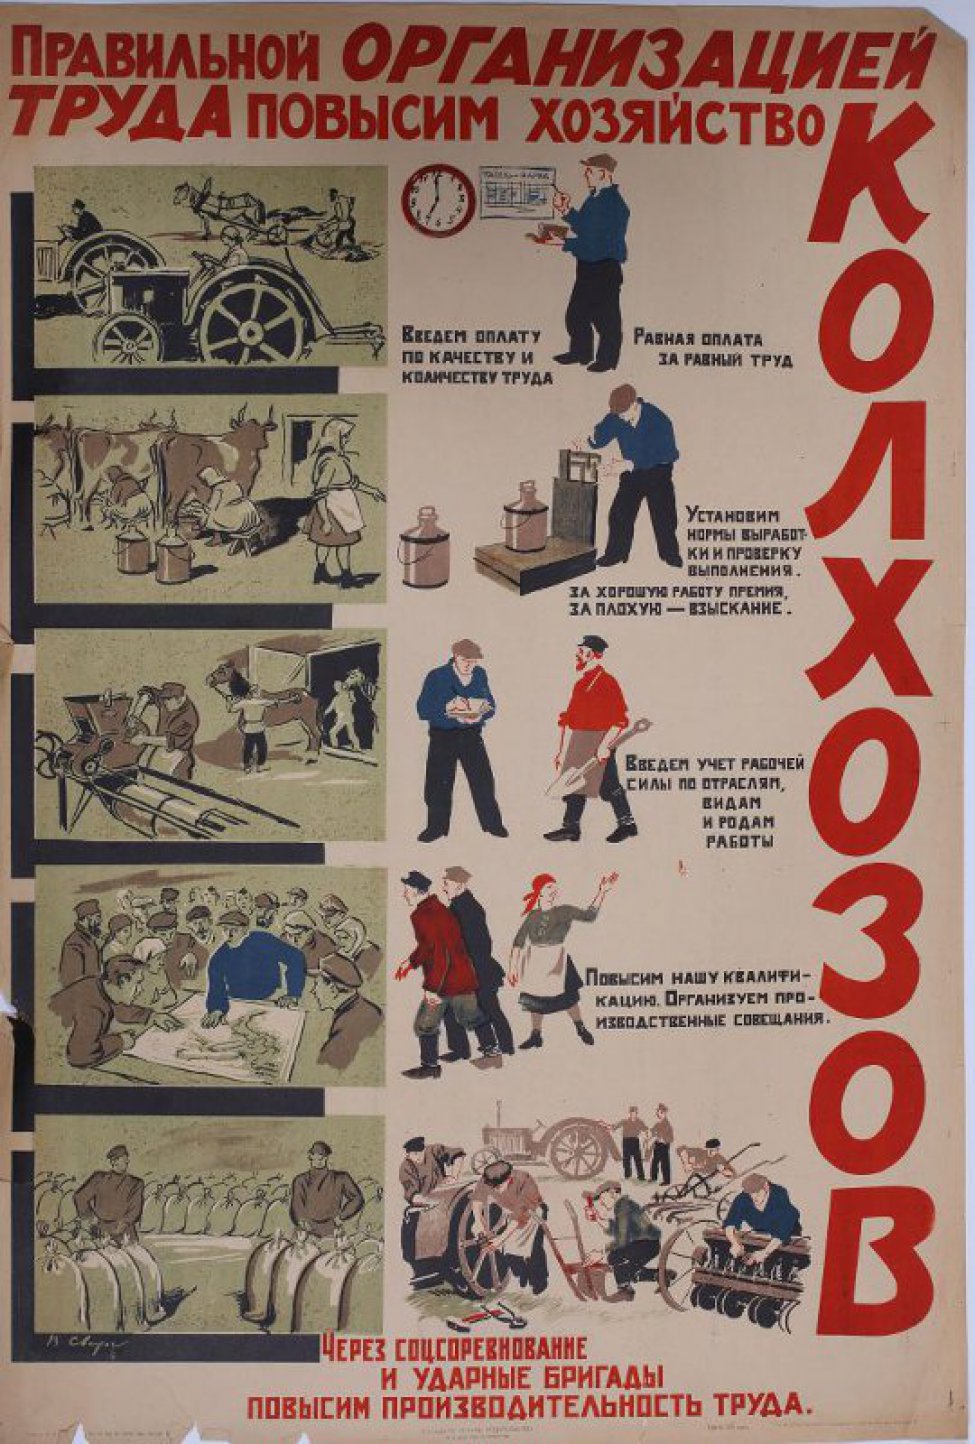 Изображено слева пять рисунков организация труда  в поле, на скотном дворе и т.д. Справа лозунги о рационализации труда и рисунки.